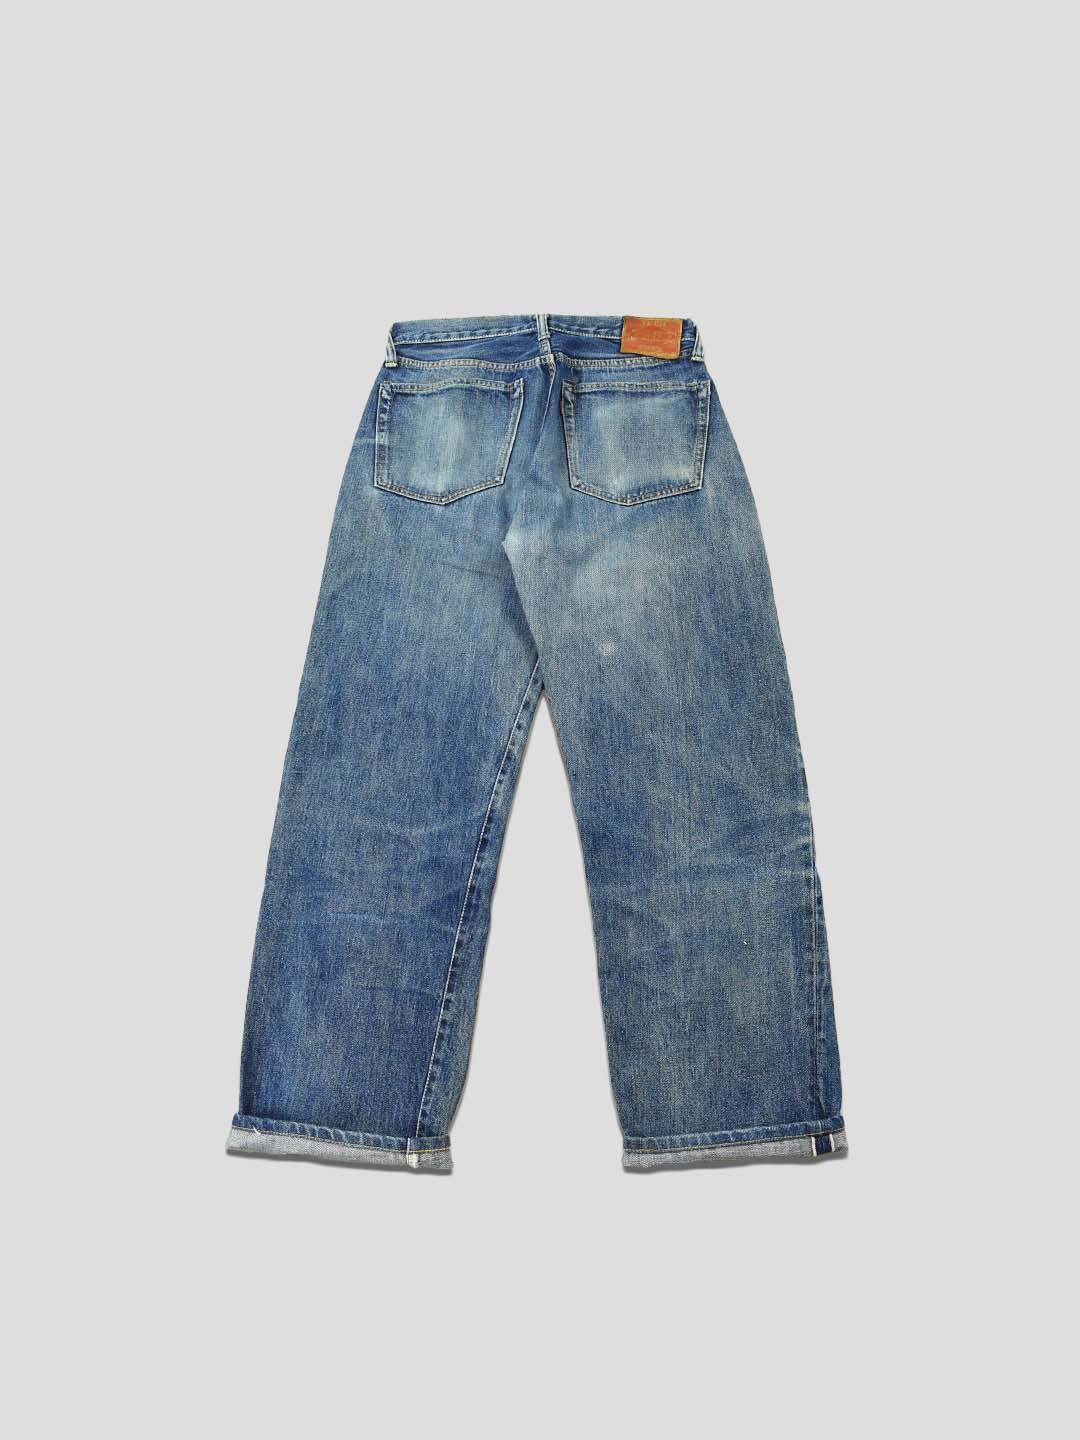 [29] Pherrow's Stormy Blue Jeans